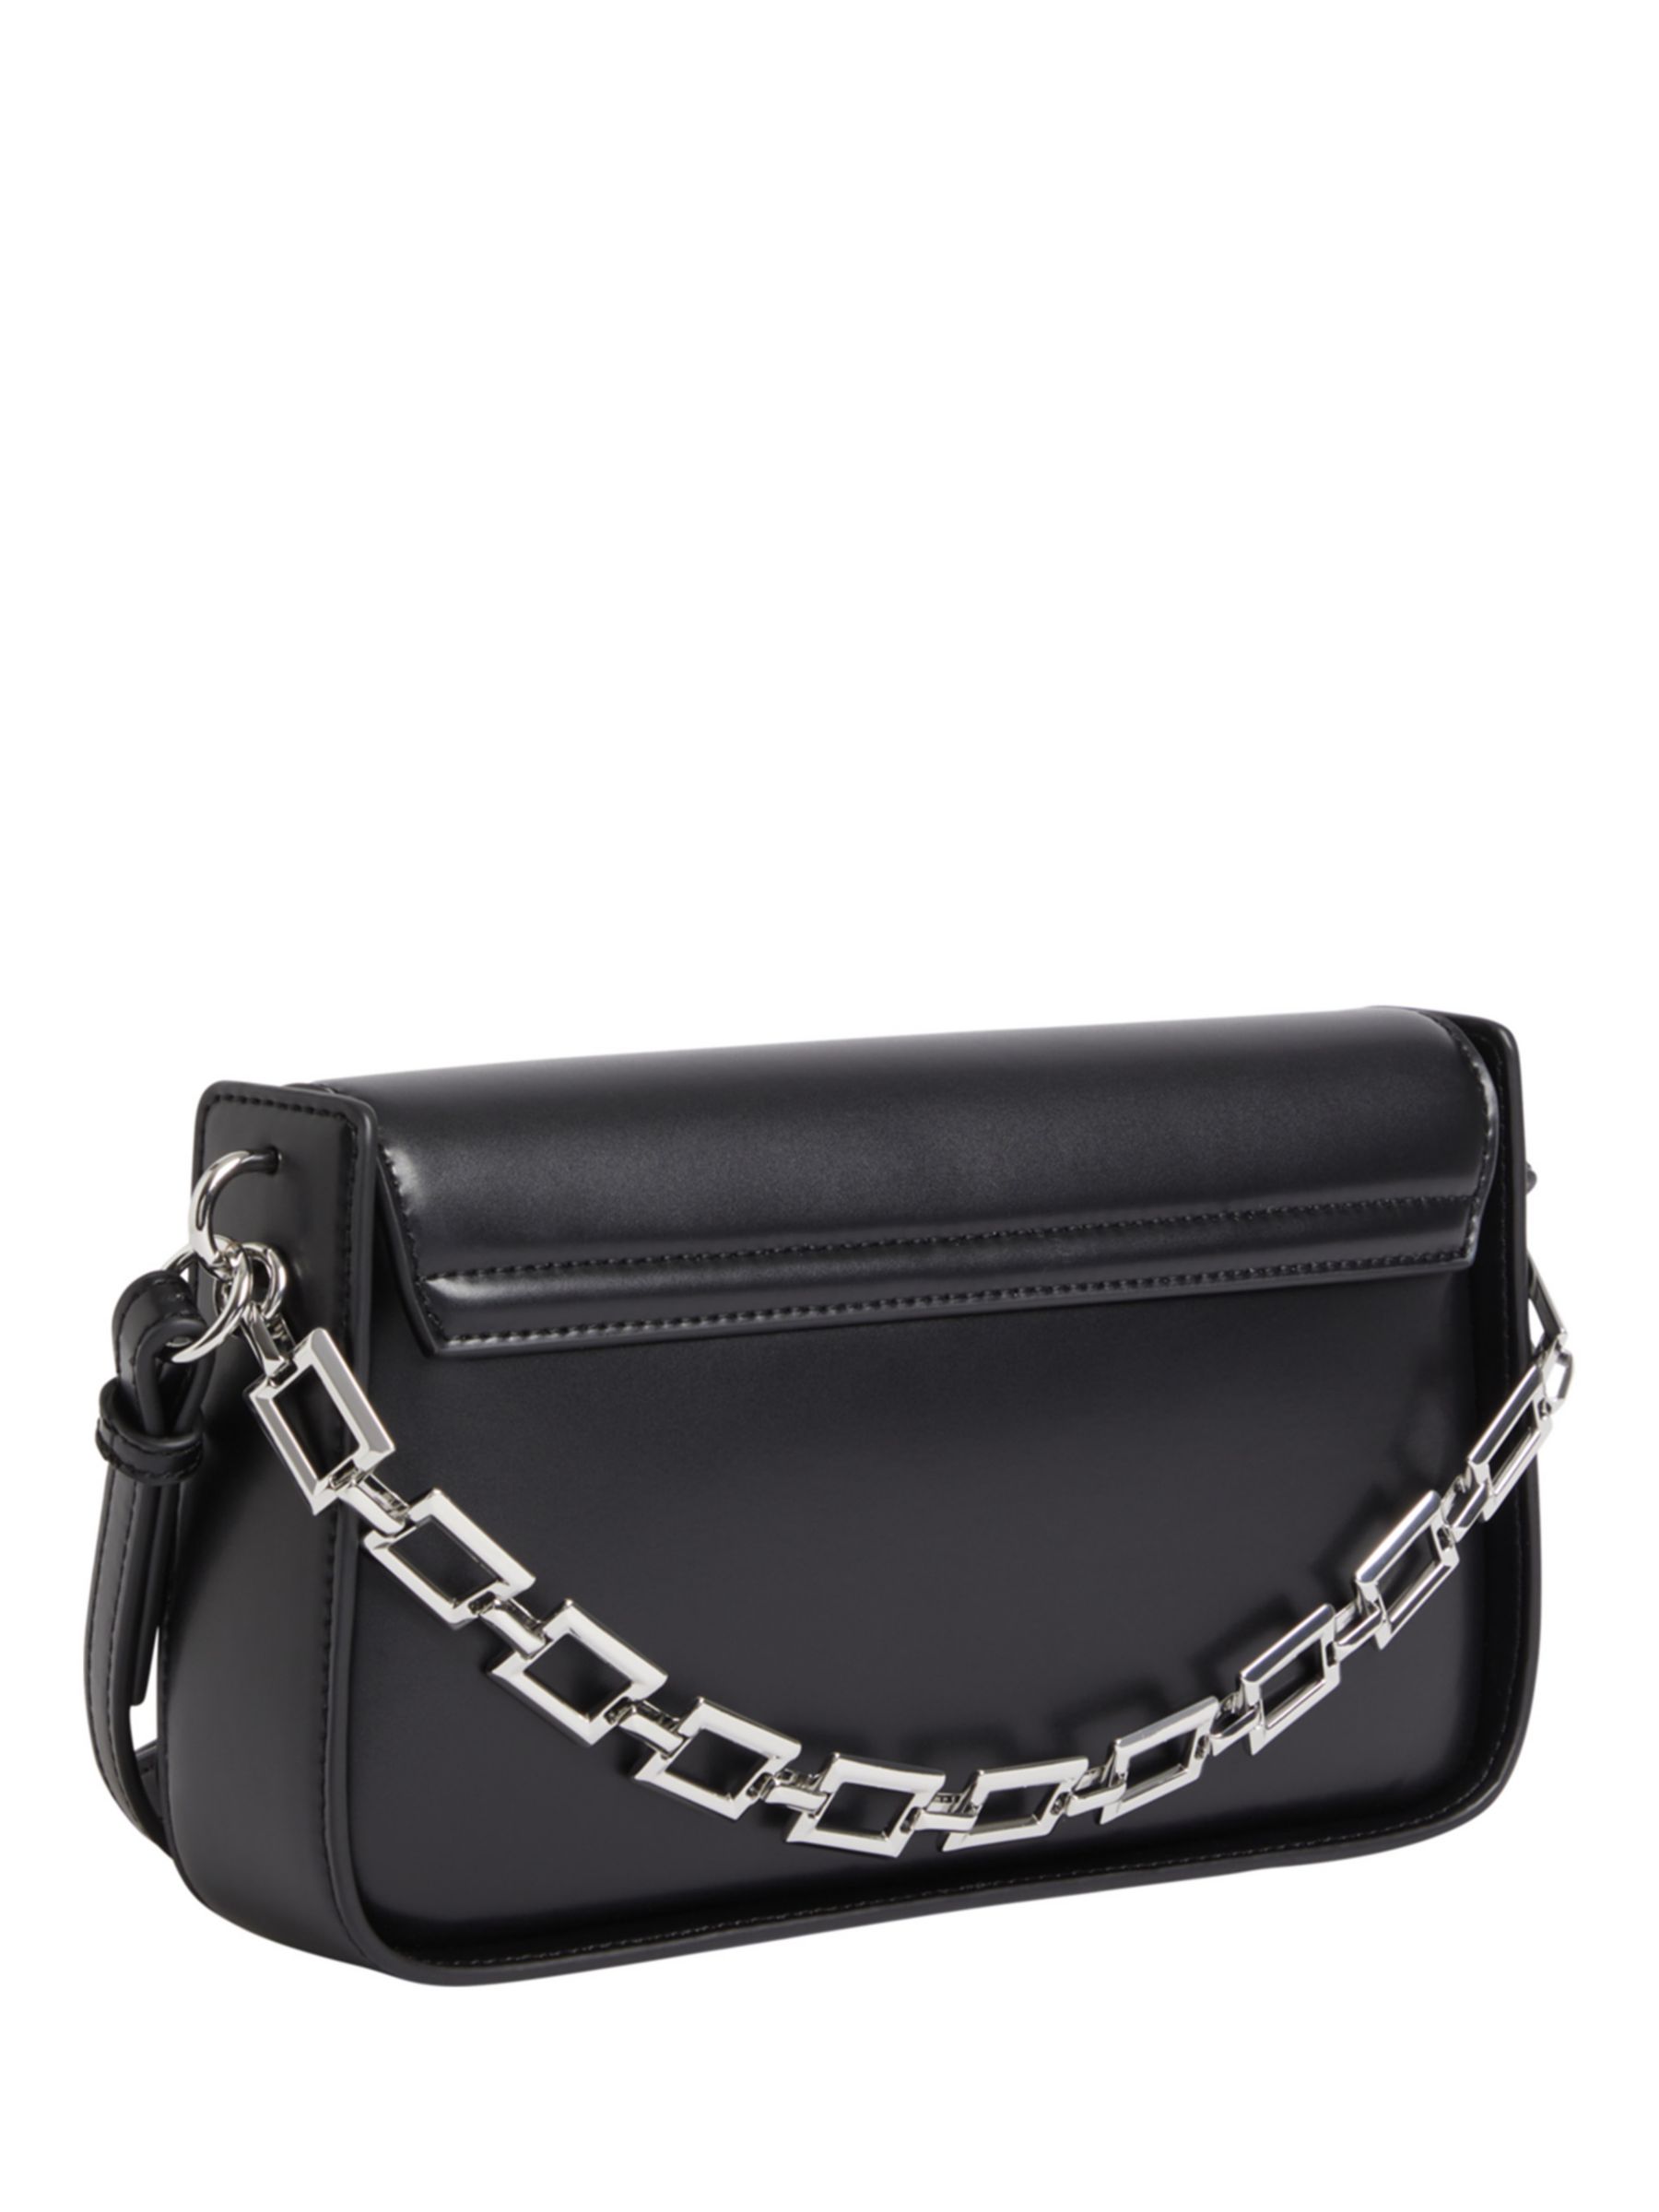 Buy Calvin Klein Archival Chain Strap Shoulder Bag, Black Online at johnlewis.com